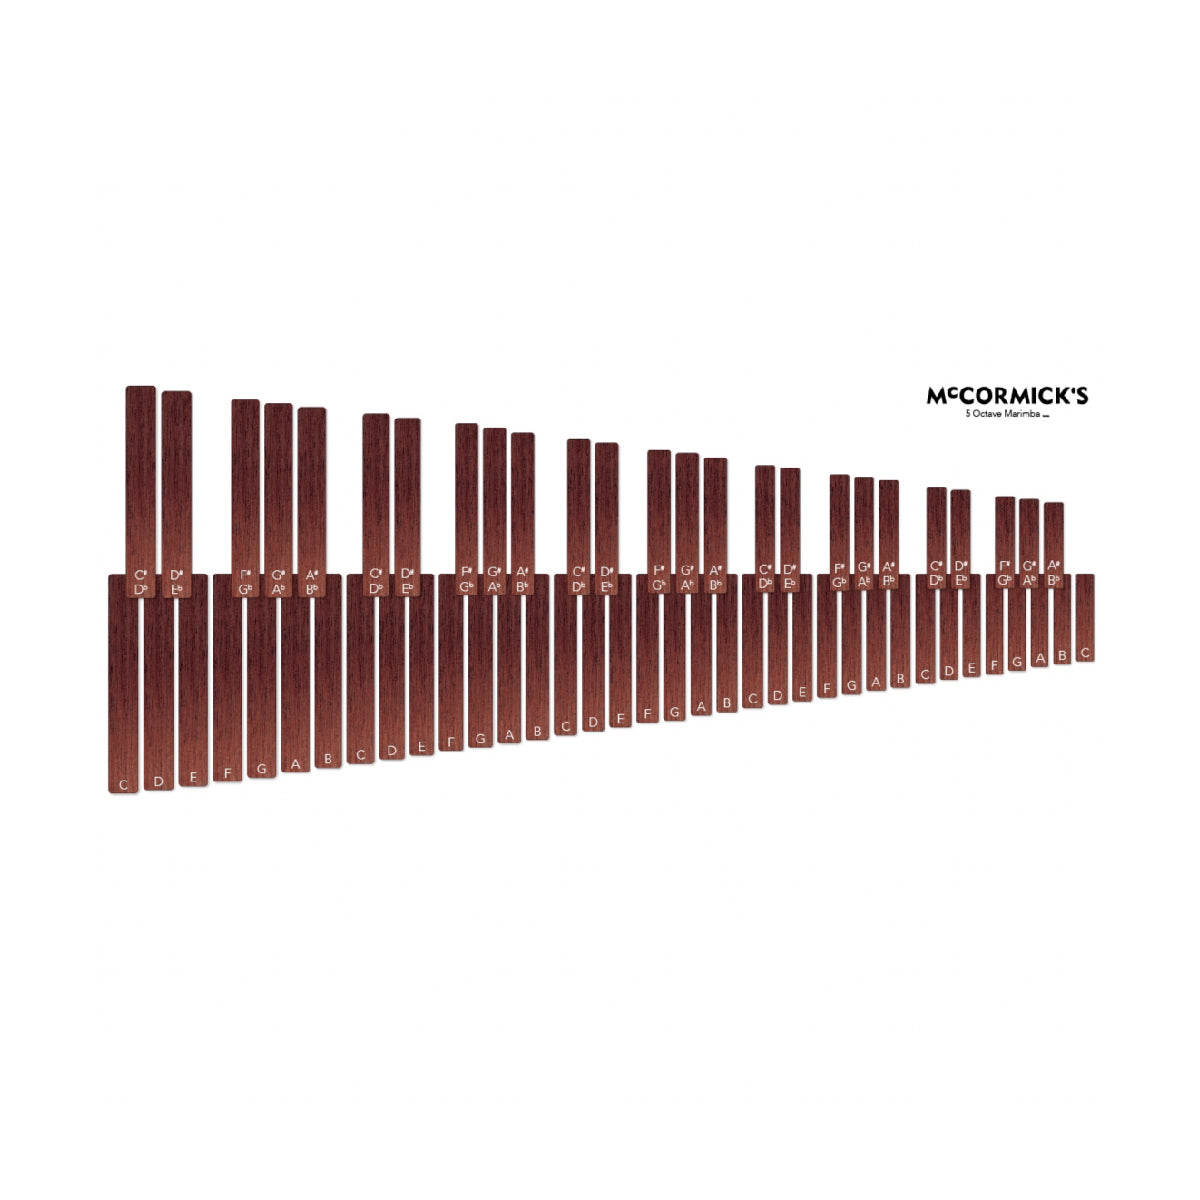 Marimba Practice Mat - 5 Octave Keyboard Pad